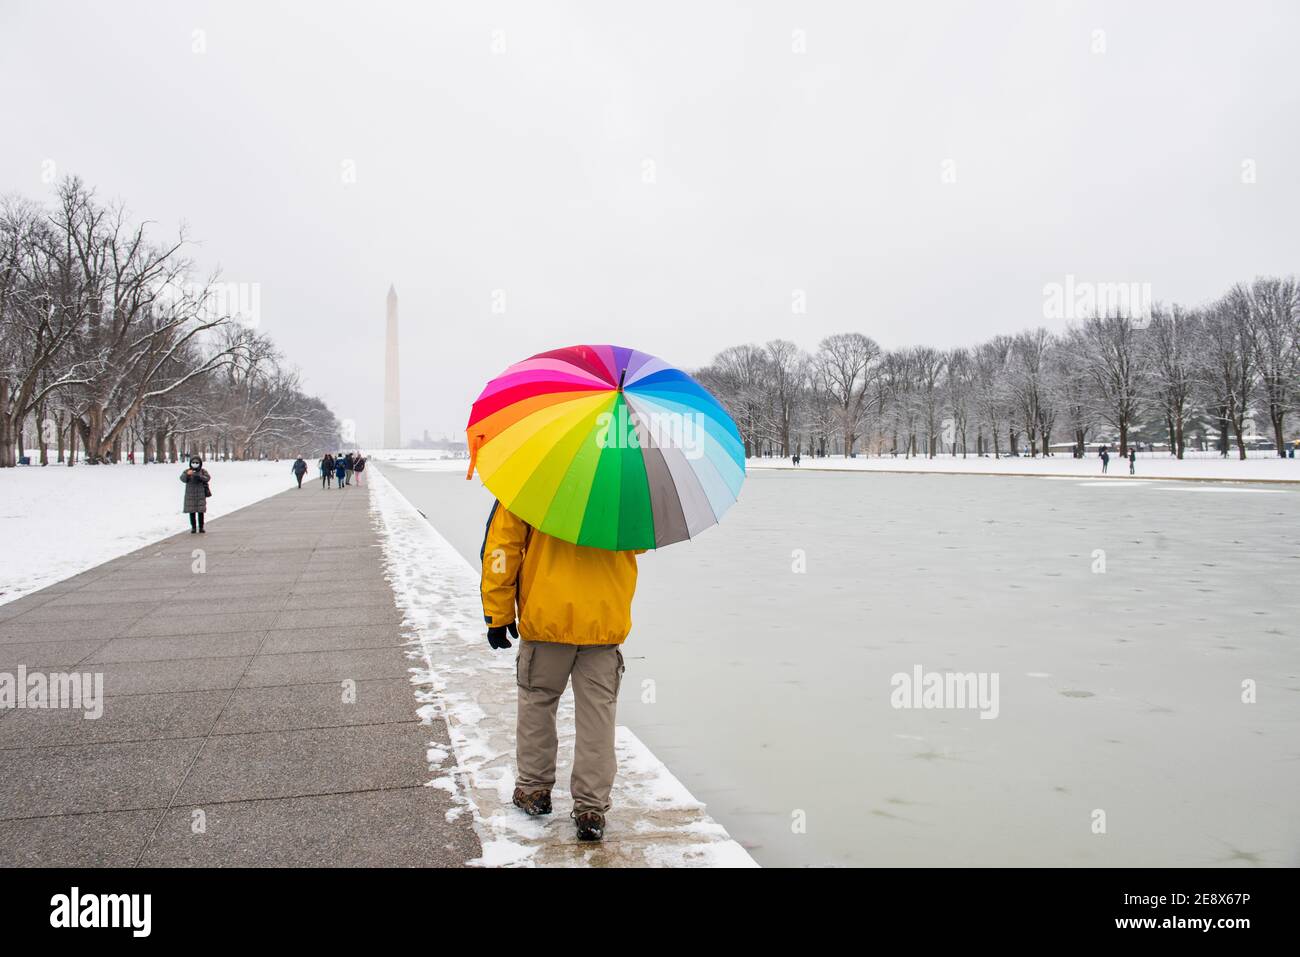 Un uomo porta un ombrello colorato durante una giornata innevata al National Mall di Washington, D.C. il monumento di Washignton può essere visto in lontananza Foto Stock